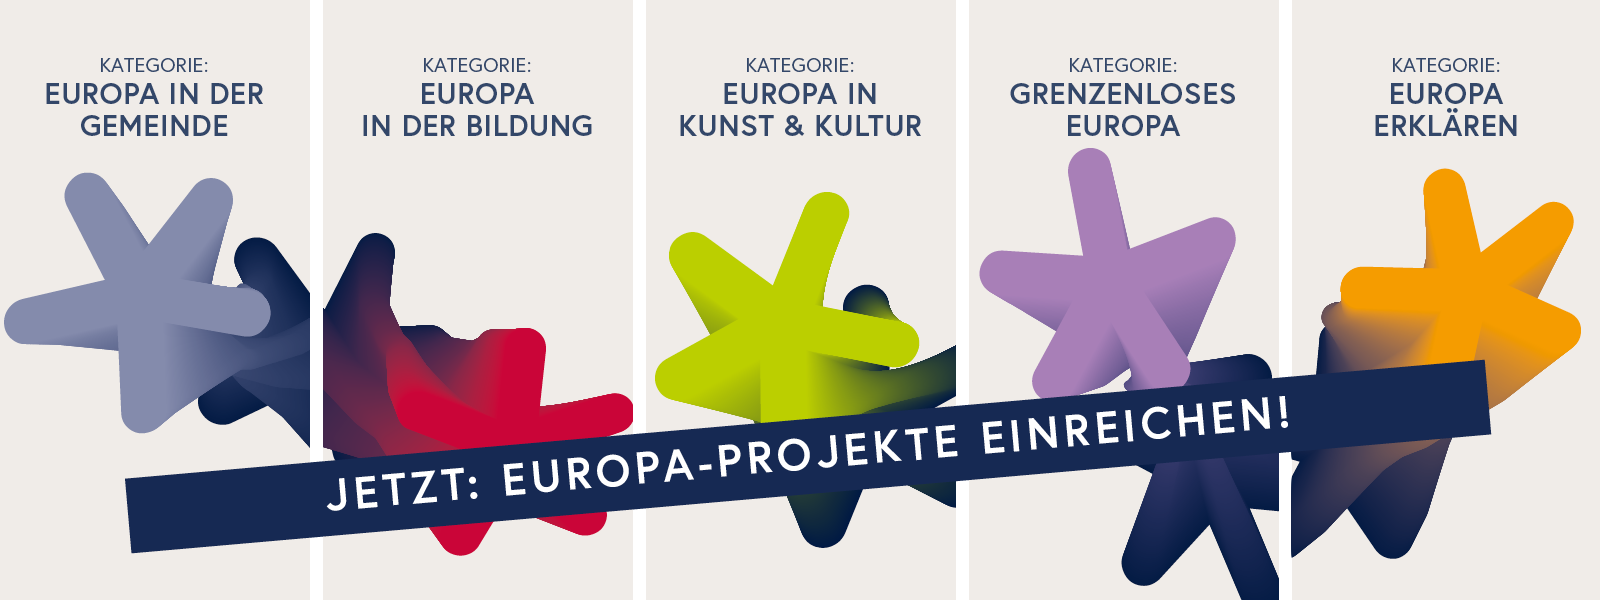 Sujet Europastaatspreis 2024: 5 Kategorien - Jetzt Europa-Projekte einreichen!